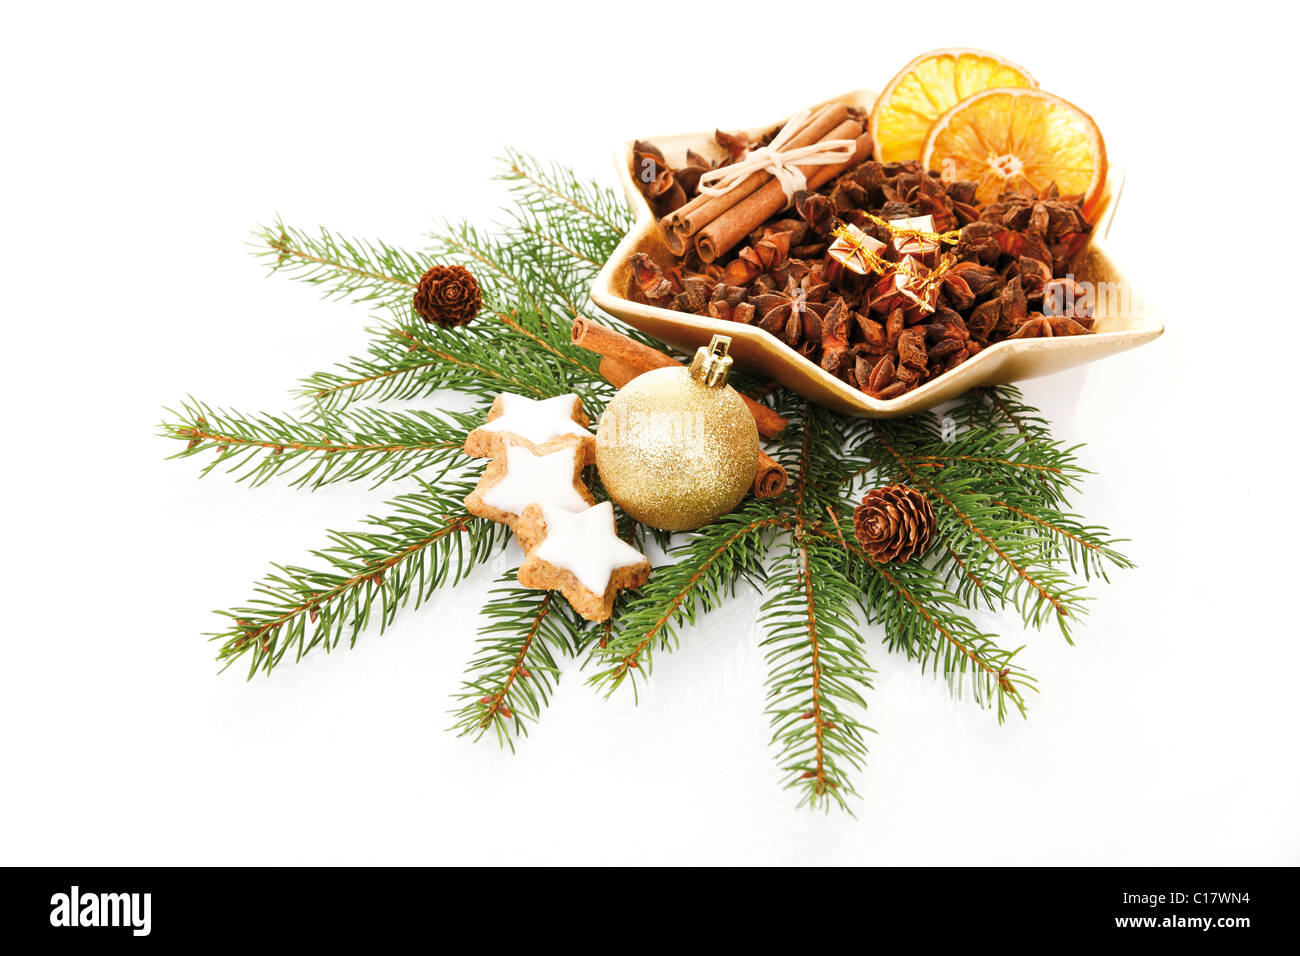 Las ramas de abeto con adornos del árbol de Navidad, estrellas de canela y una placa de navidad secos con rodajas de naranja, el anís Foto de stock